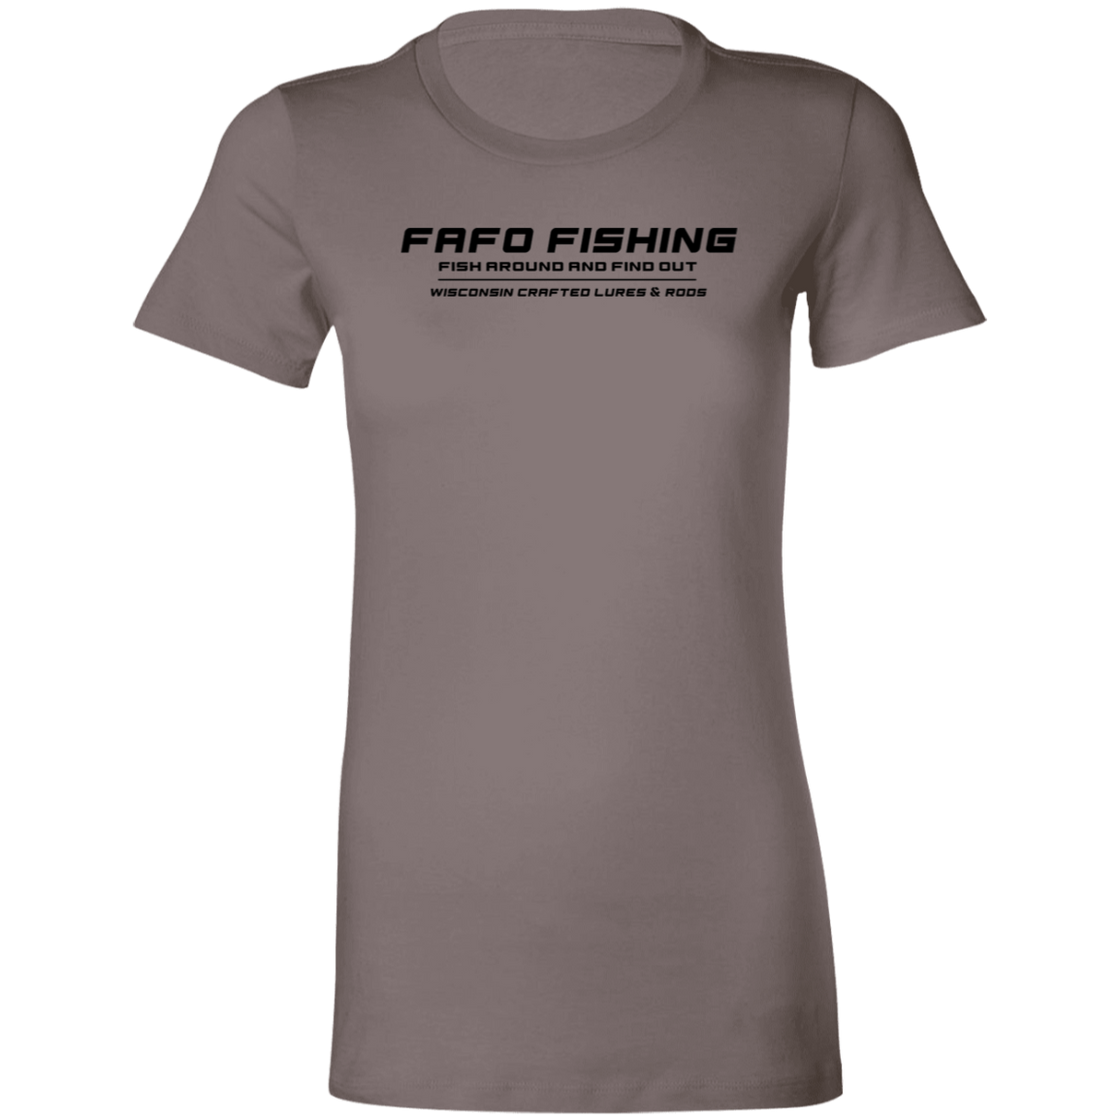 FAFO FISHING Ladies T-Shirt